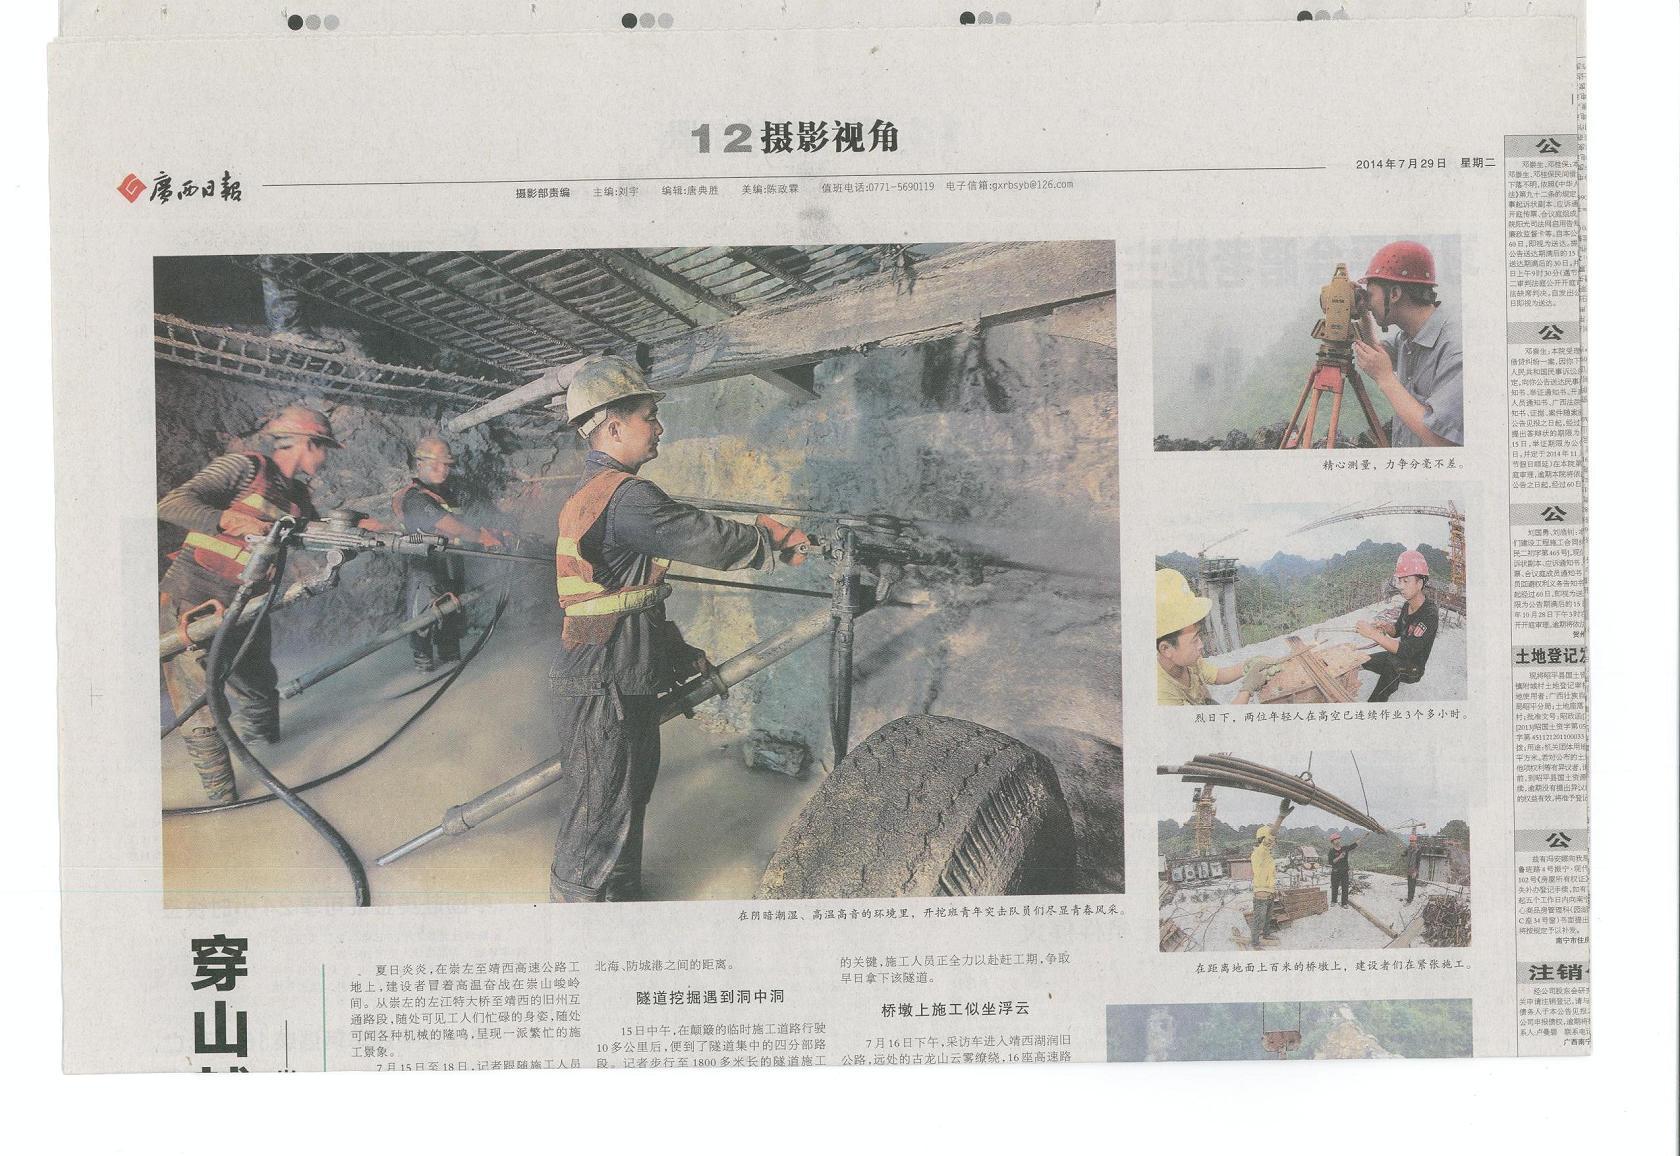 广西日报2014年7月29日第12版-《穿山越岭筑坦途》